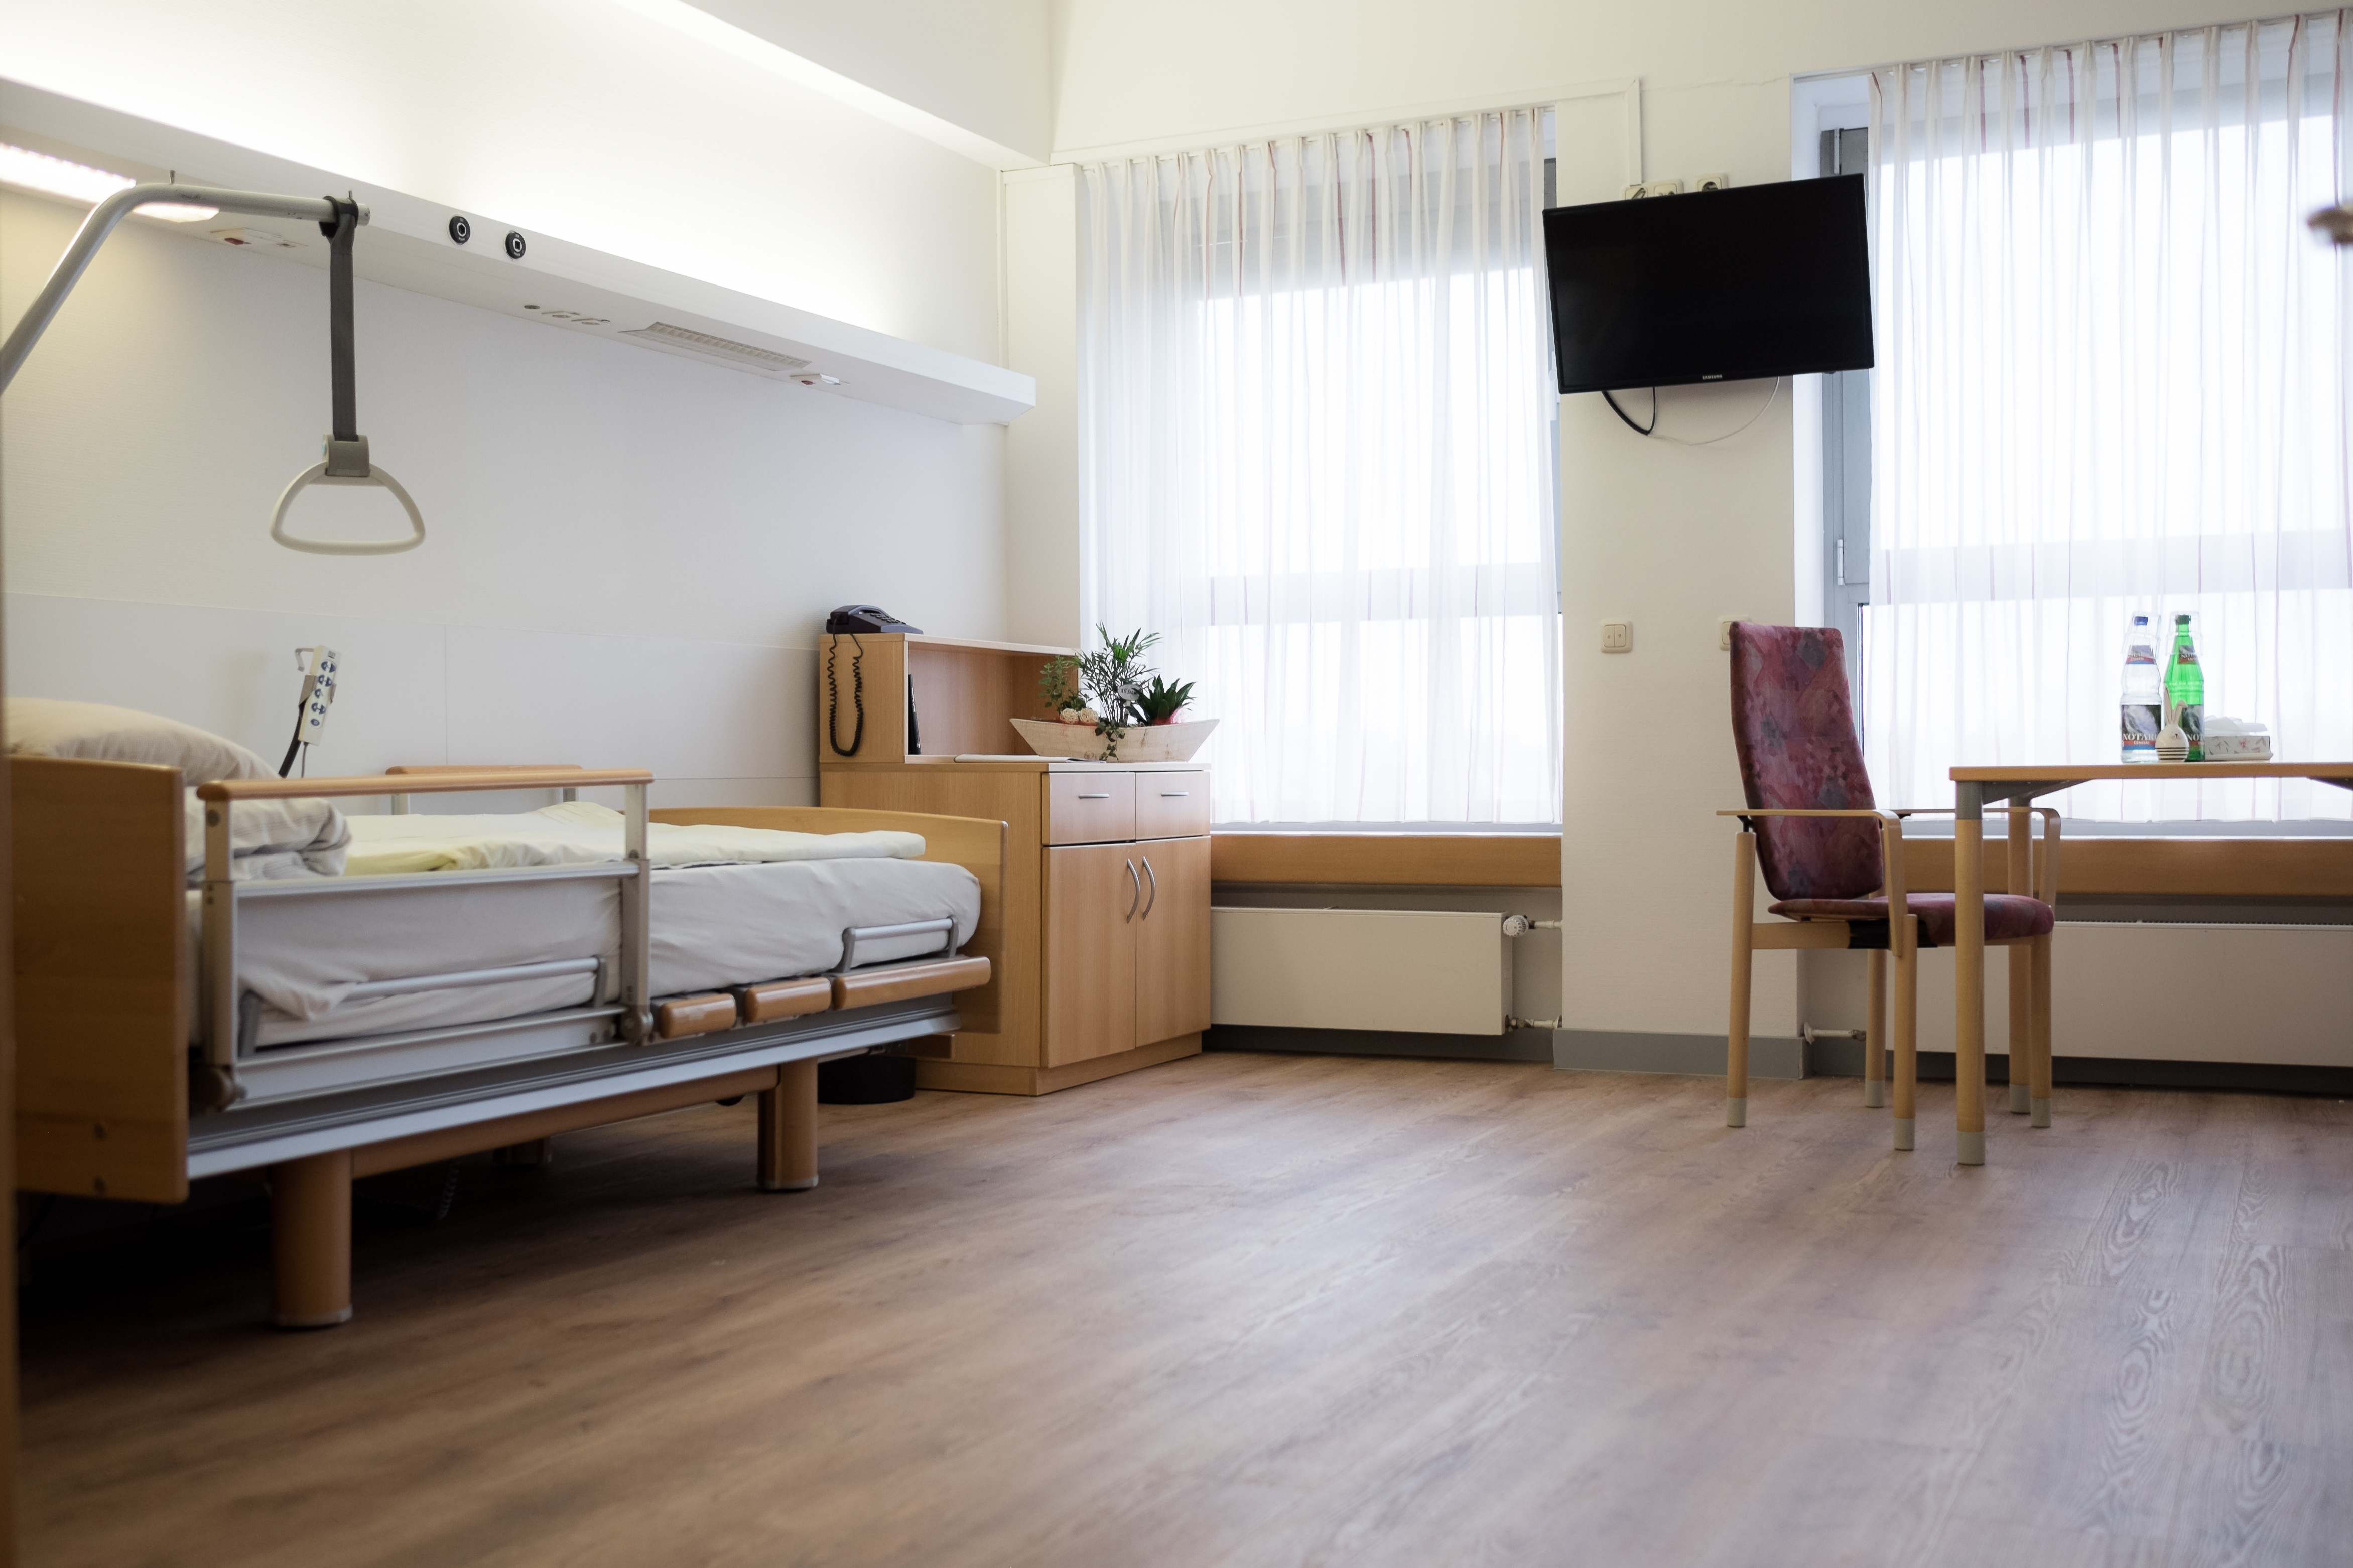 Ein Zimmer der der Kurzzeitpflege im St. Agatha Krankenhaus Köln-Niehl